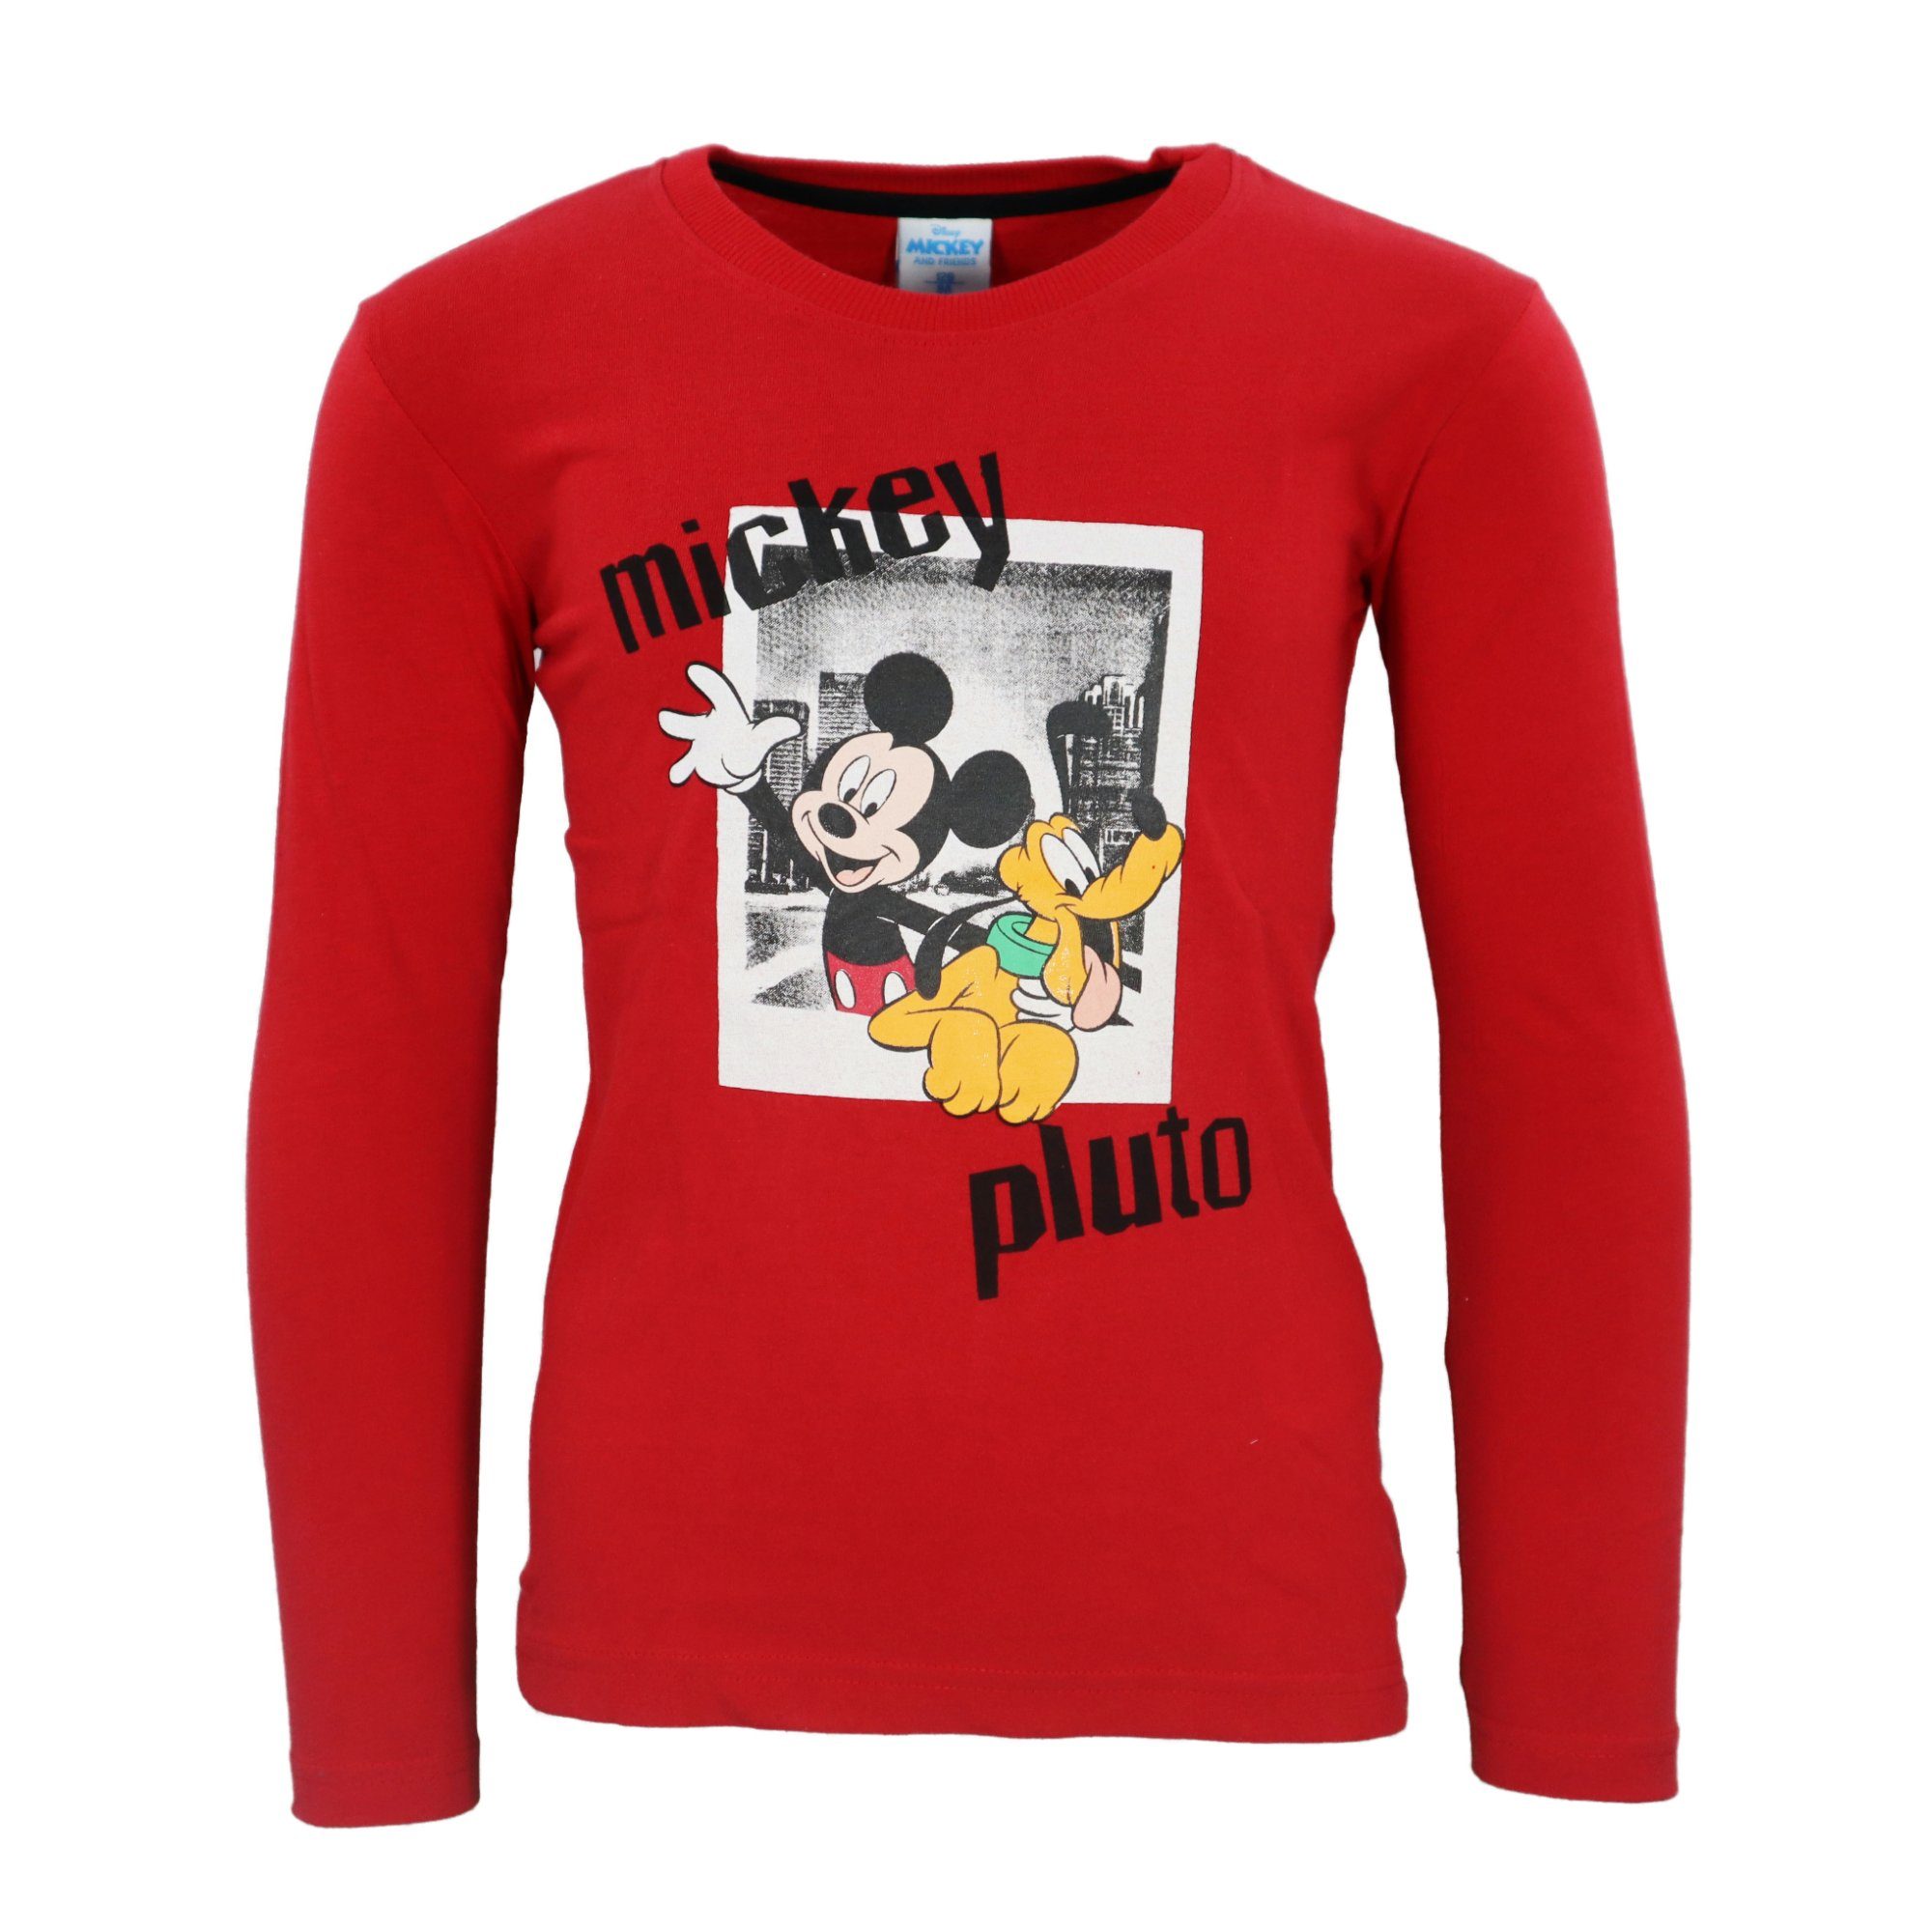 Disney Langarmshirt Disney Mickey Maus Kinder Jungen Langarm Shirt Gr. 98 bis 128 Rot